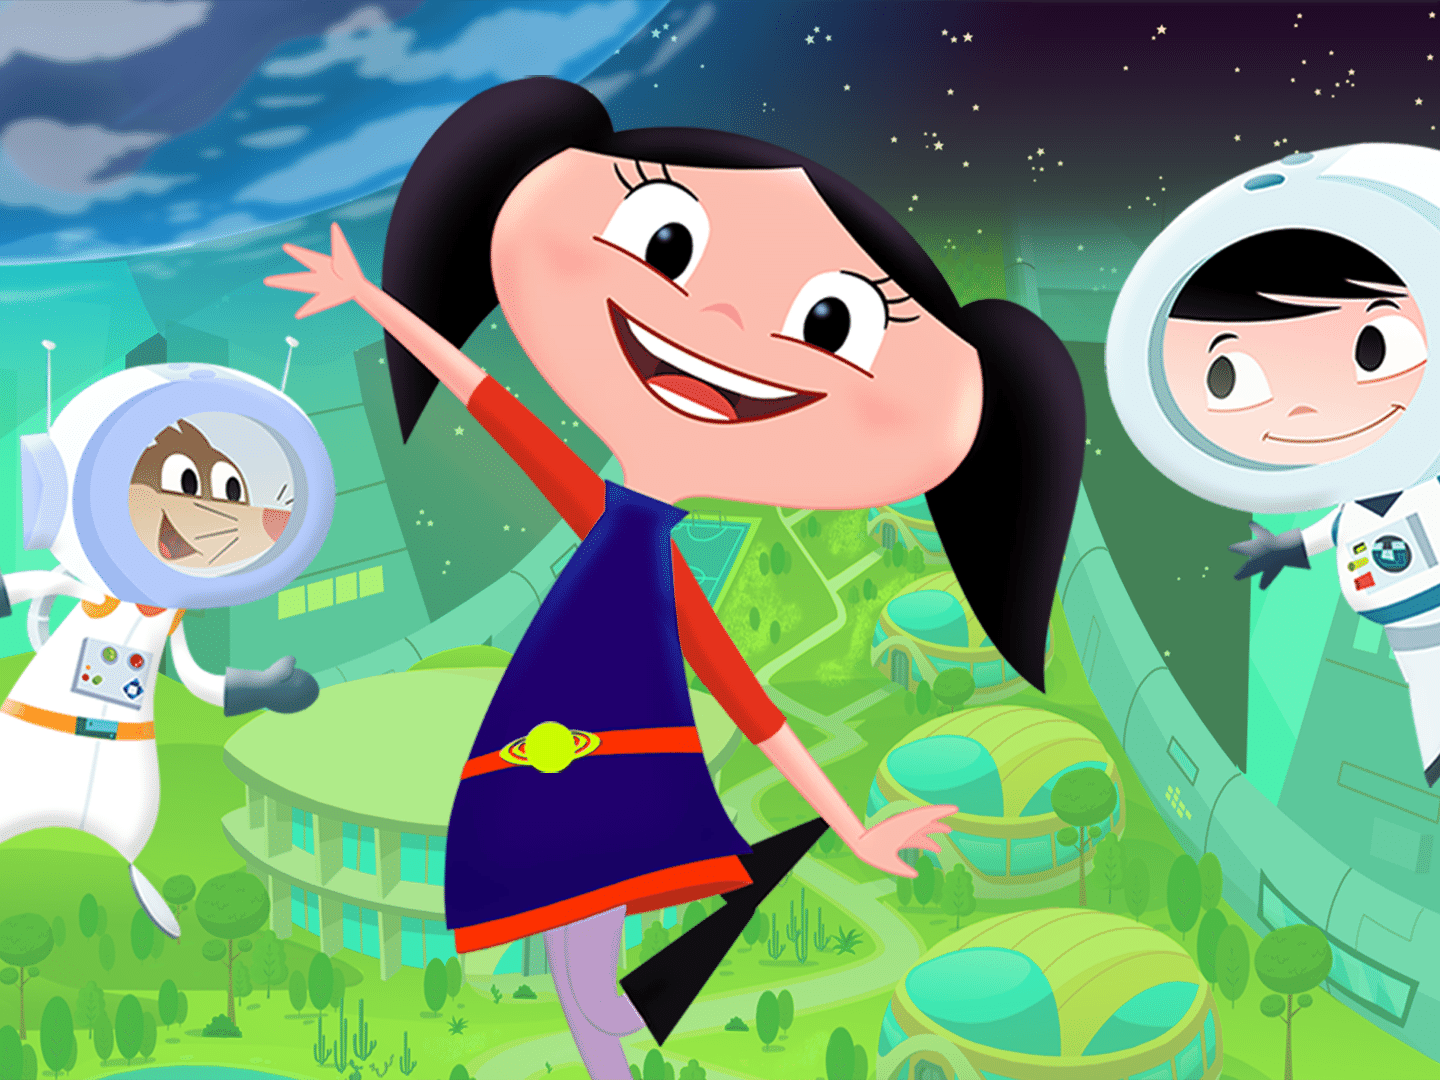 De Luna a StoryBots: veja os programas que ensinam ciência às crianças -  09/10/2020 - UOL TILT